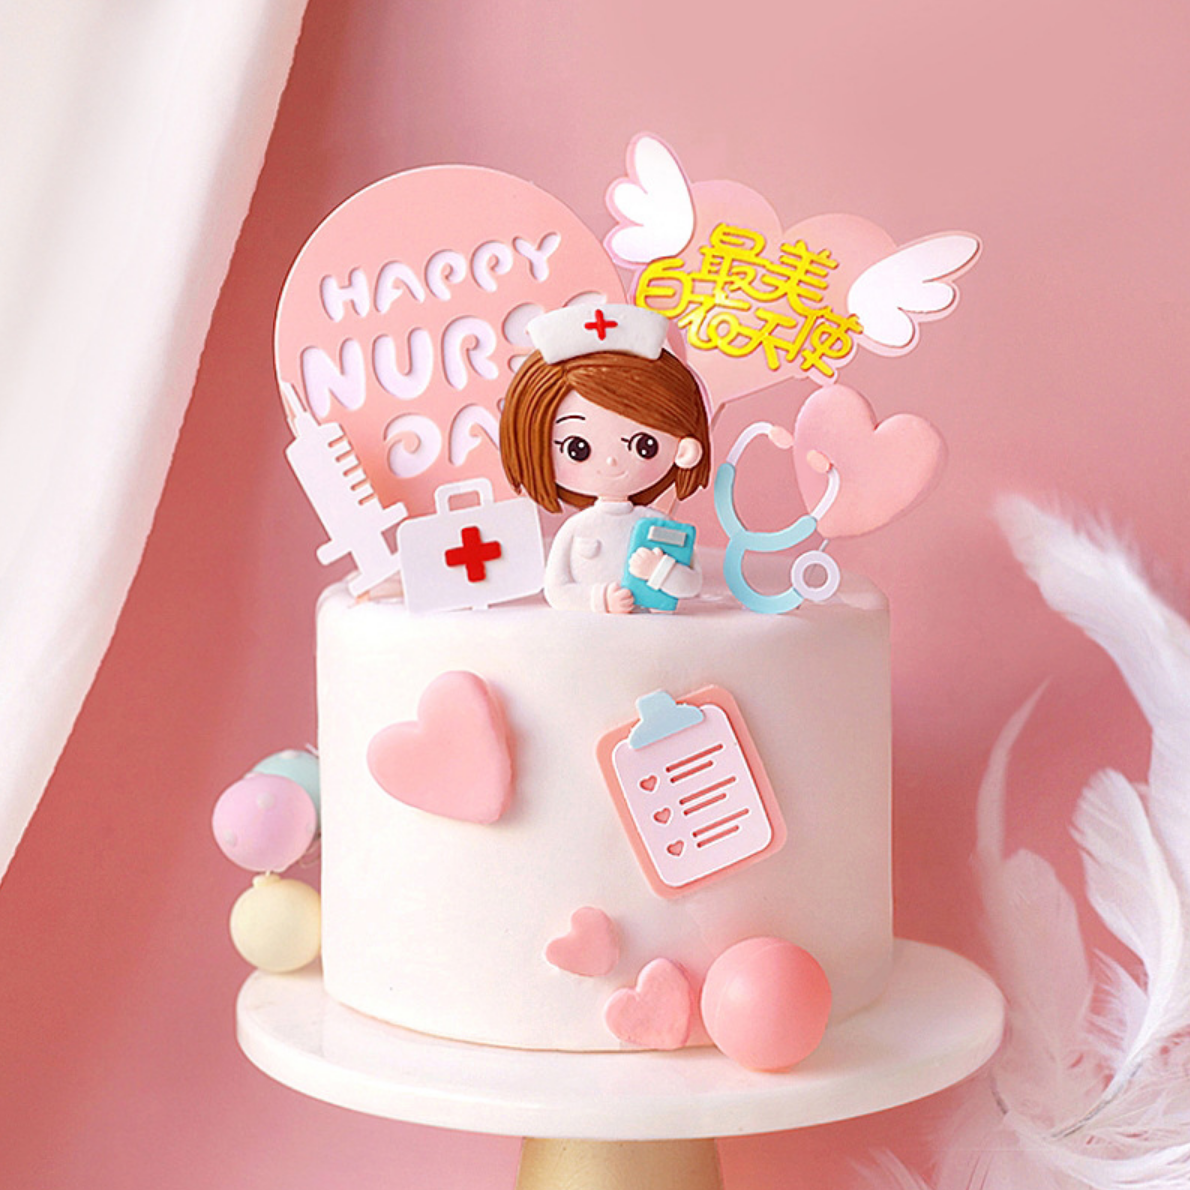 护士节蛋糕装饰烘焙护士节蛋糕装饰白衣天使医生商用生日蛋糕插件